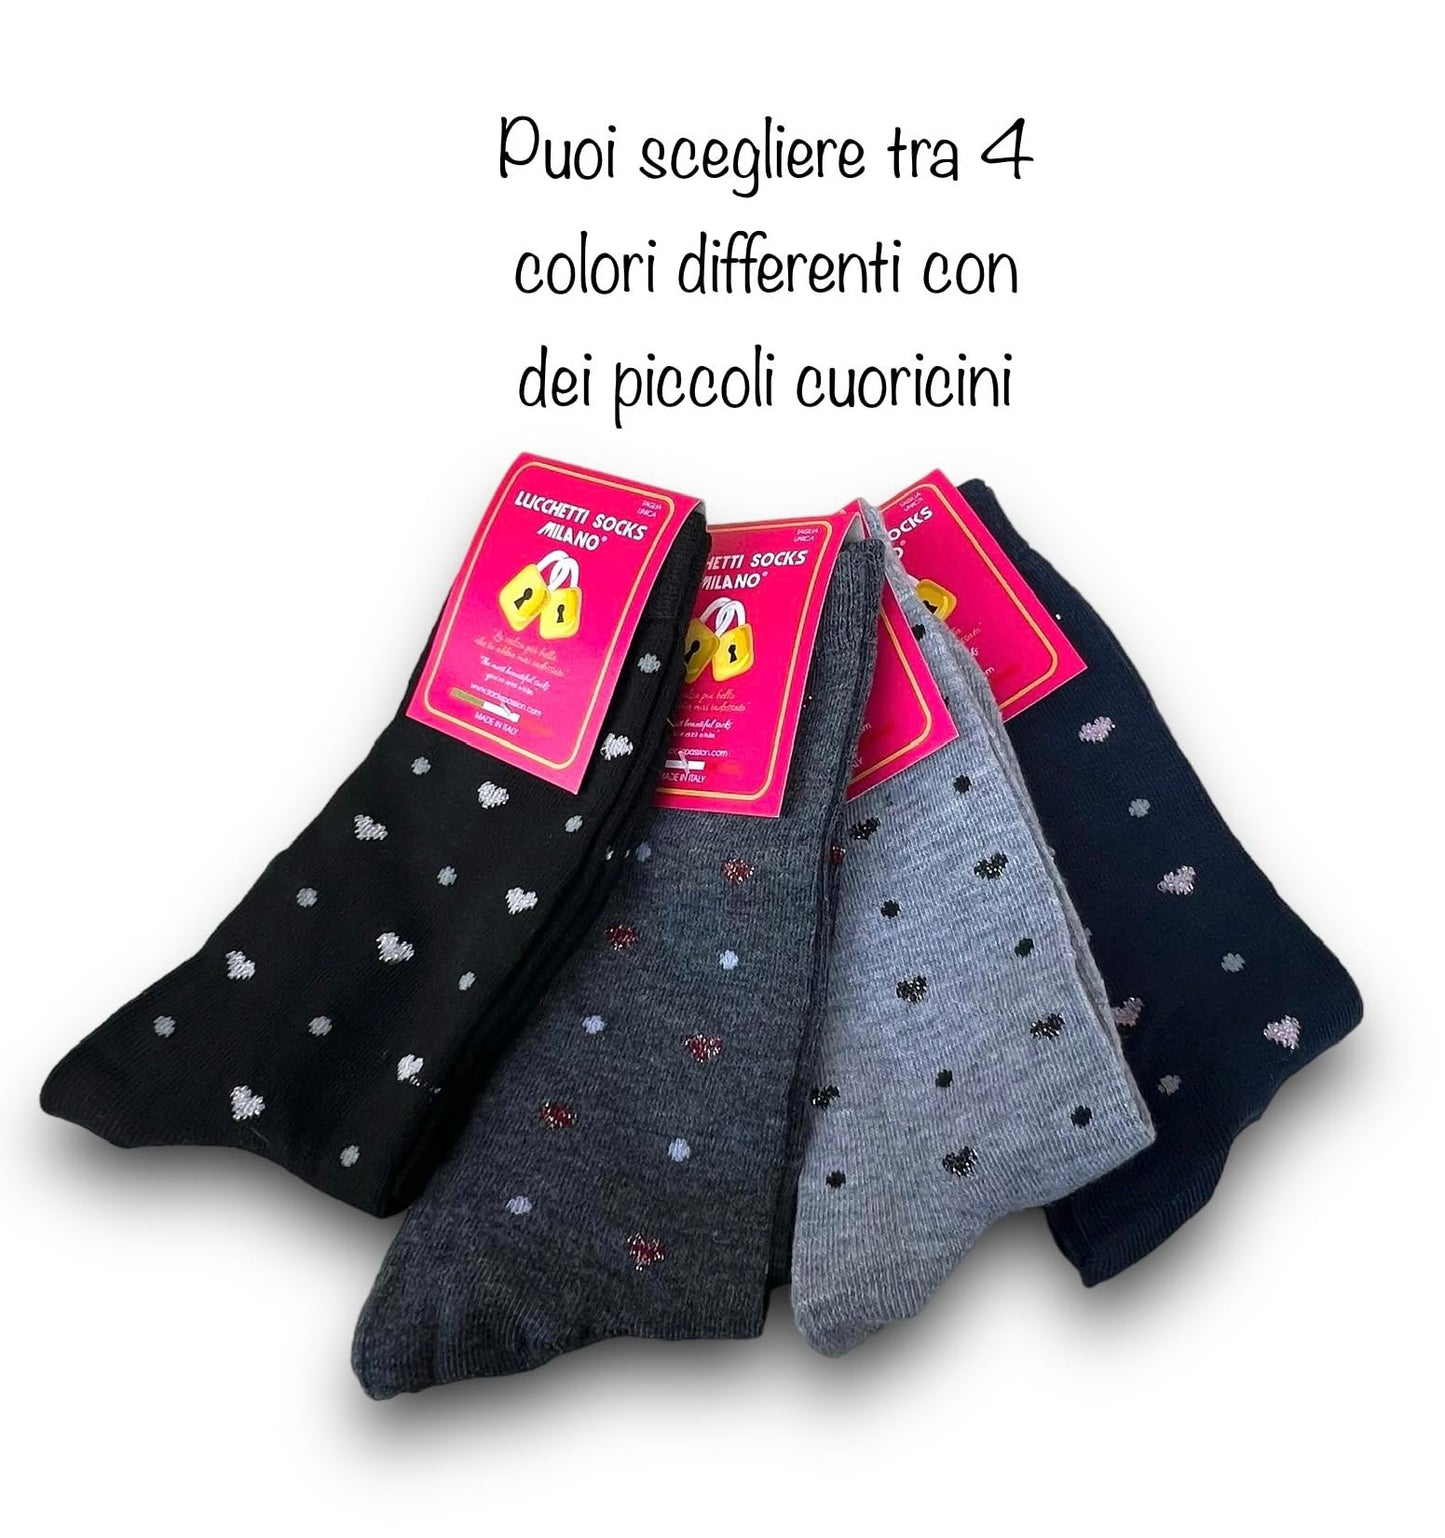 Lucchetti Socks Milano Calze donna corte caldo cotone fantasia colorate a Pois, Righe, Fantasia con disegni invernali made in Italy 4 PAIA